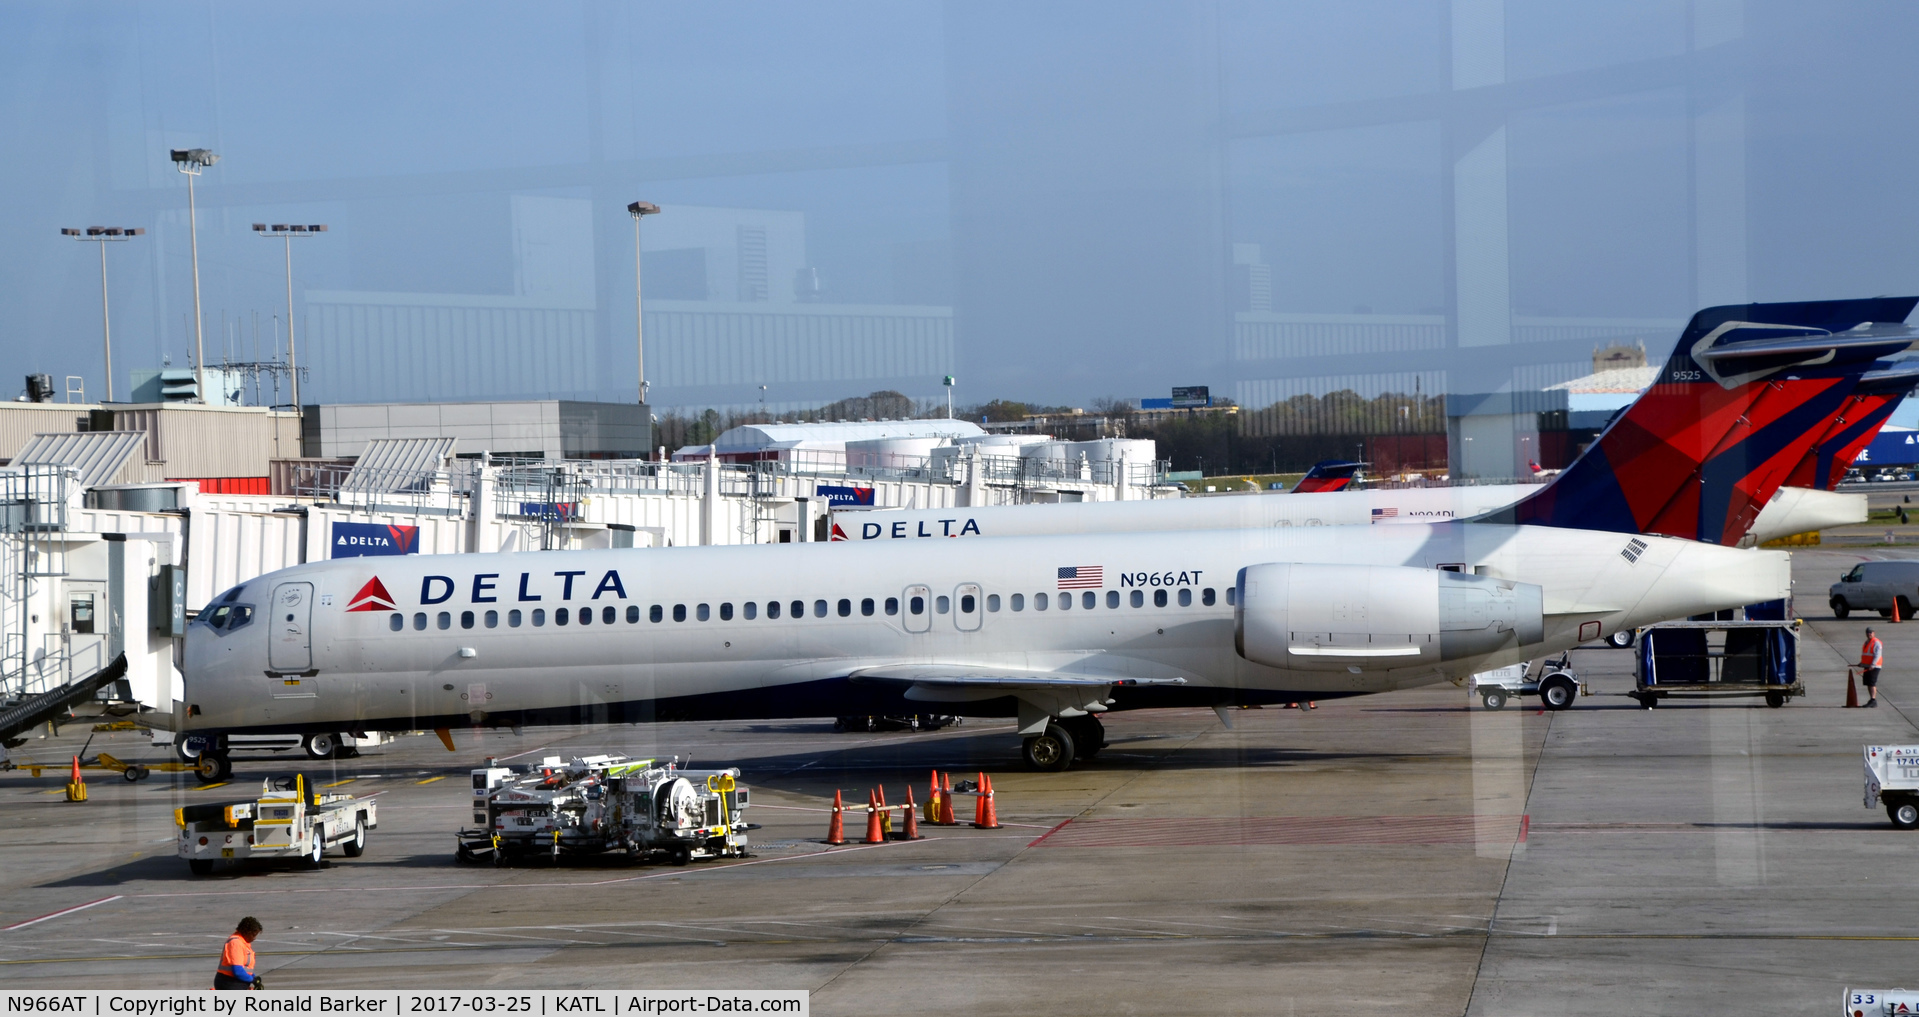 N966AT, 2001 Boeing 717-200 C/N 55027, Gate C37 Atlanta